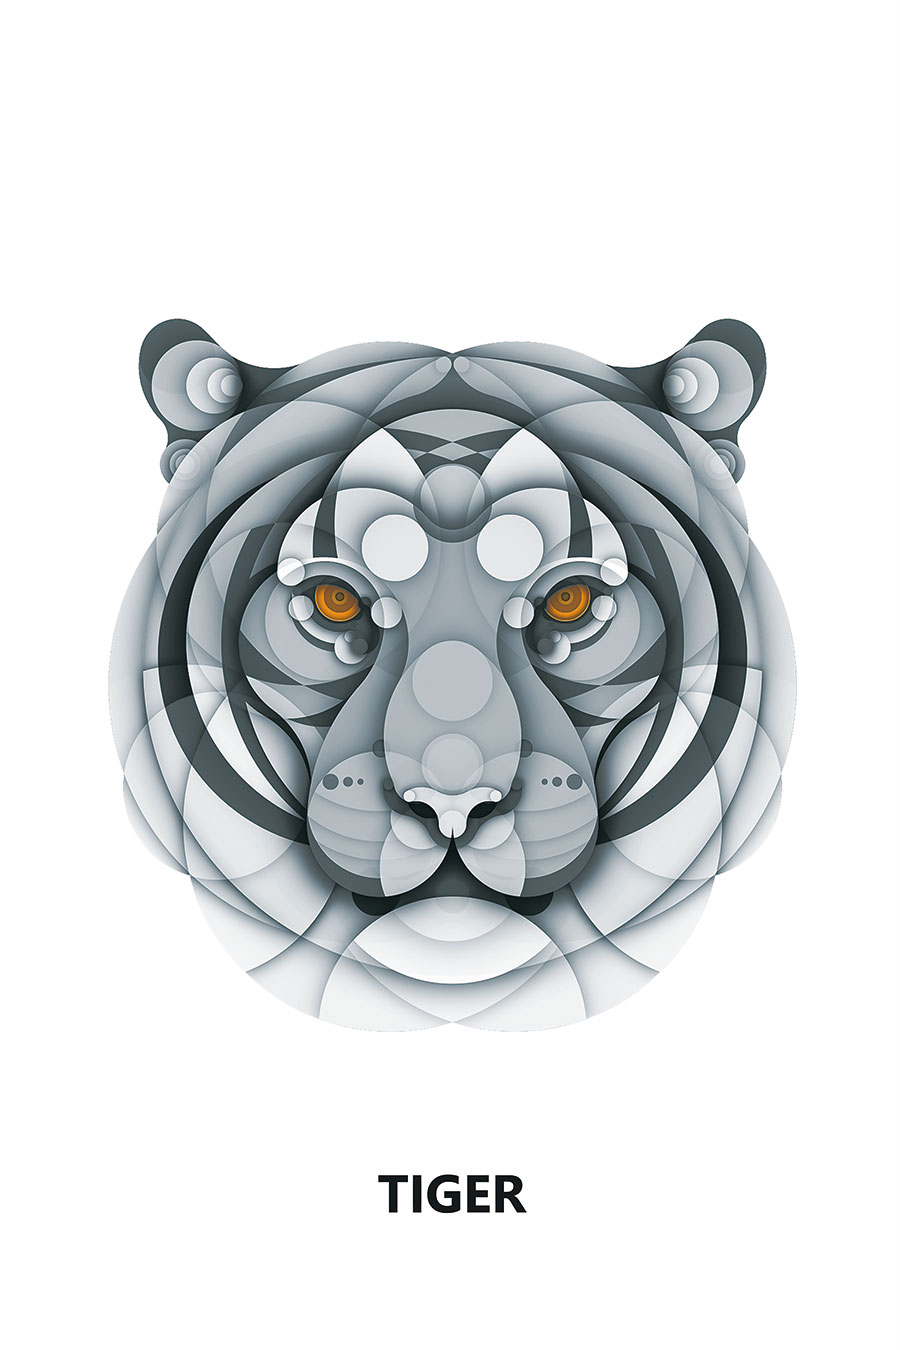 电脑装饰画设计:之圆圈组成的动物画: 虎头装饰画